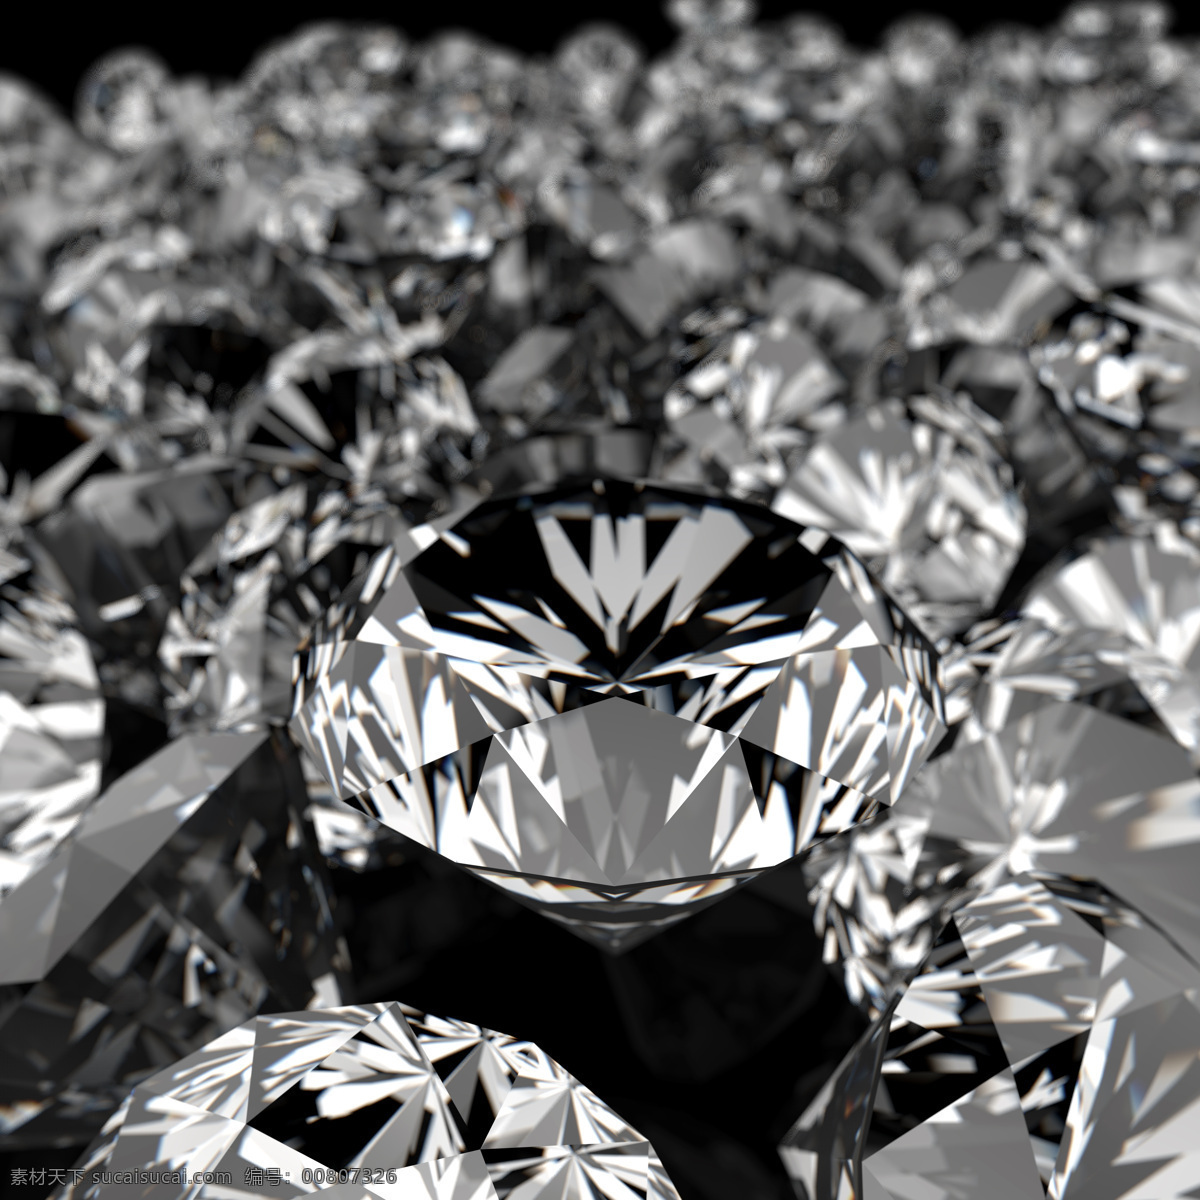 钻石 广告 素材图片 水晶 钻石摄影 钻石素材 珠宝 珠宝服饰 生活百科